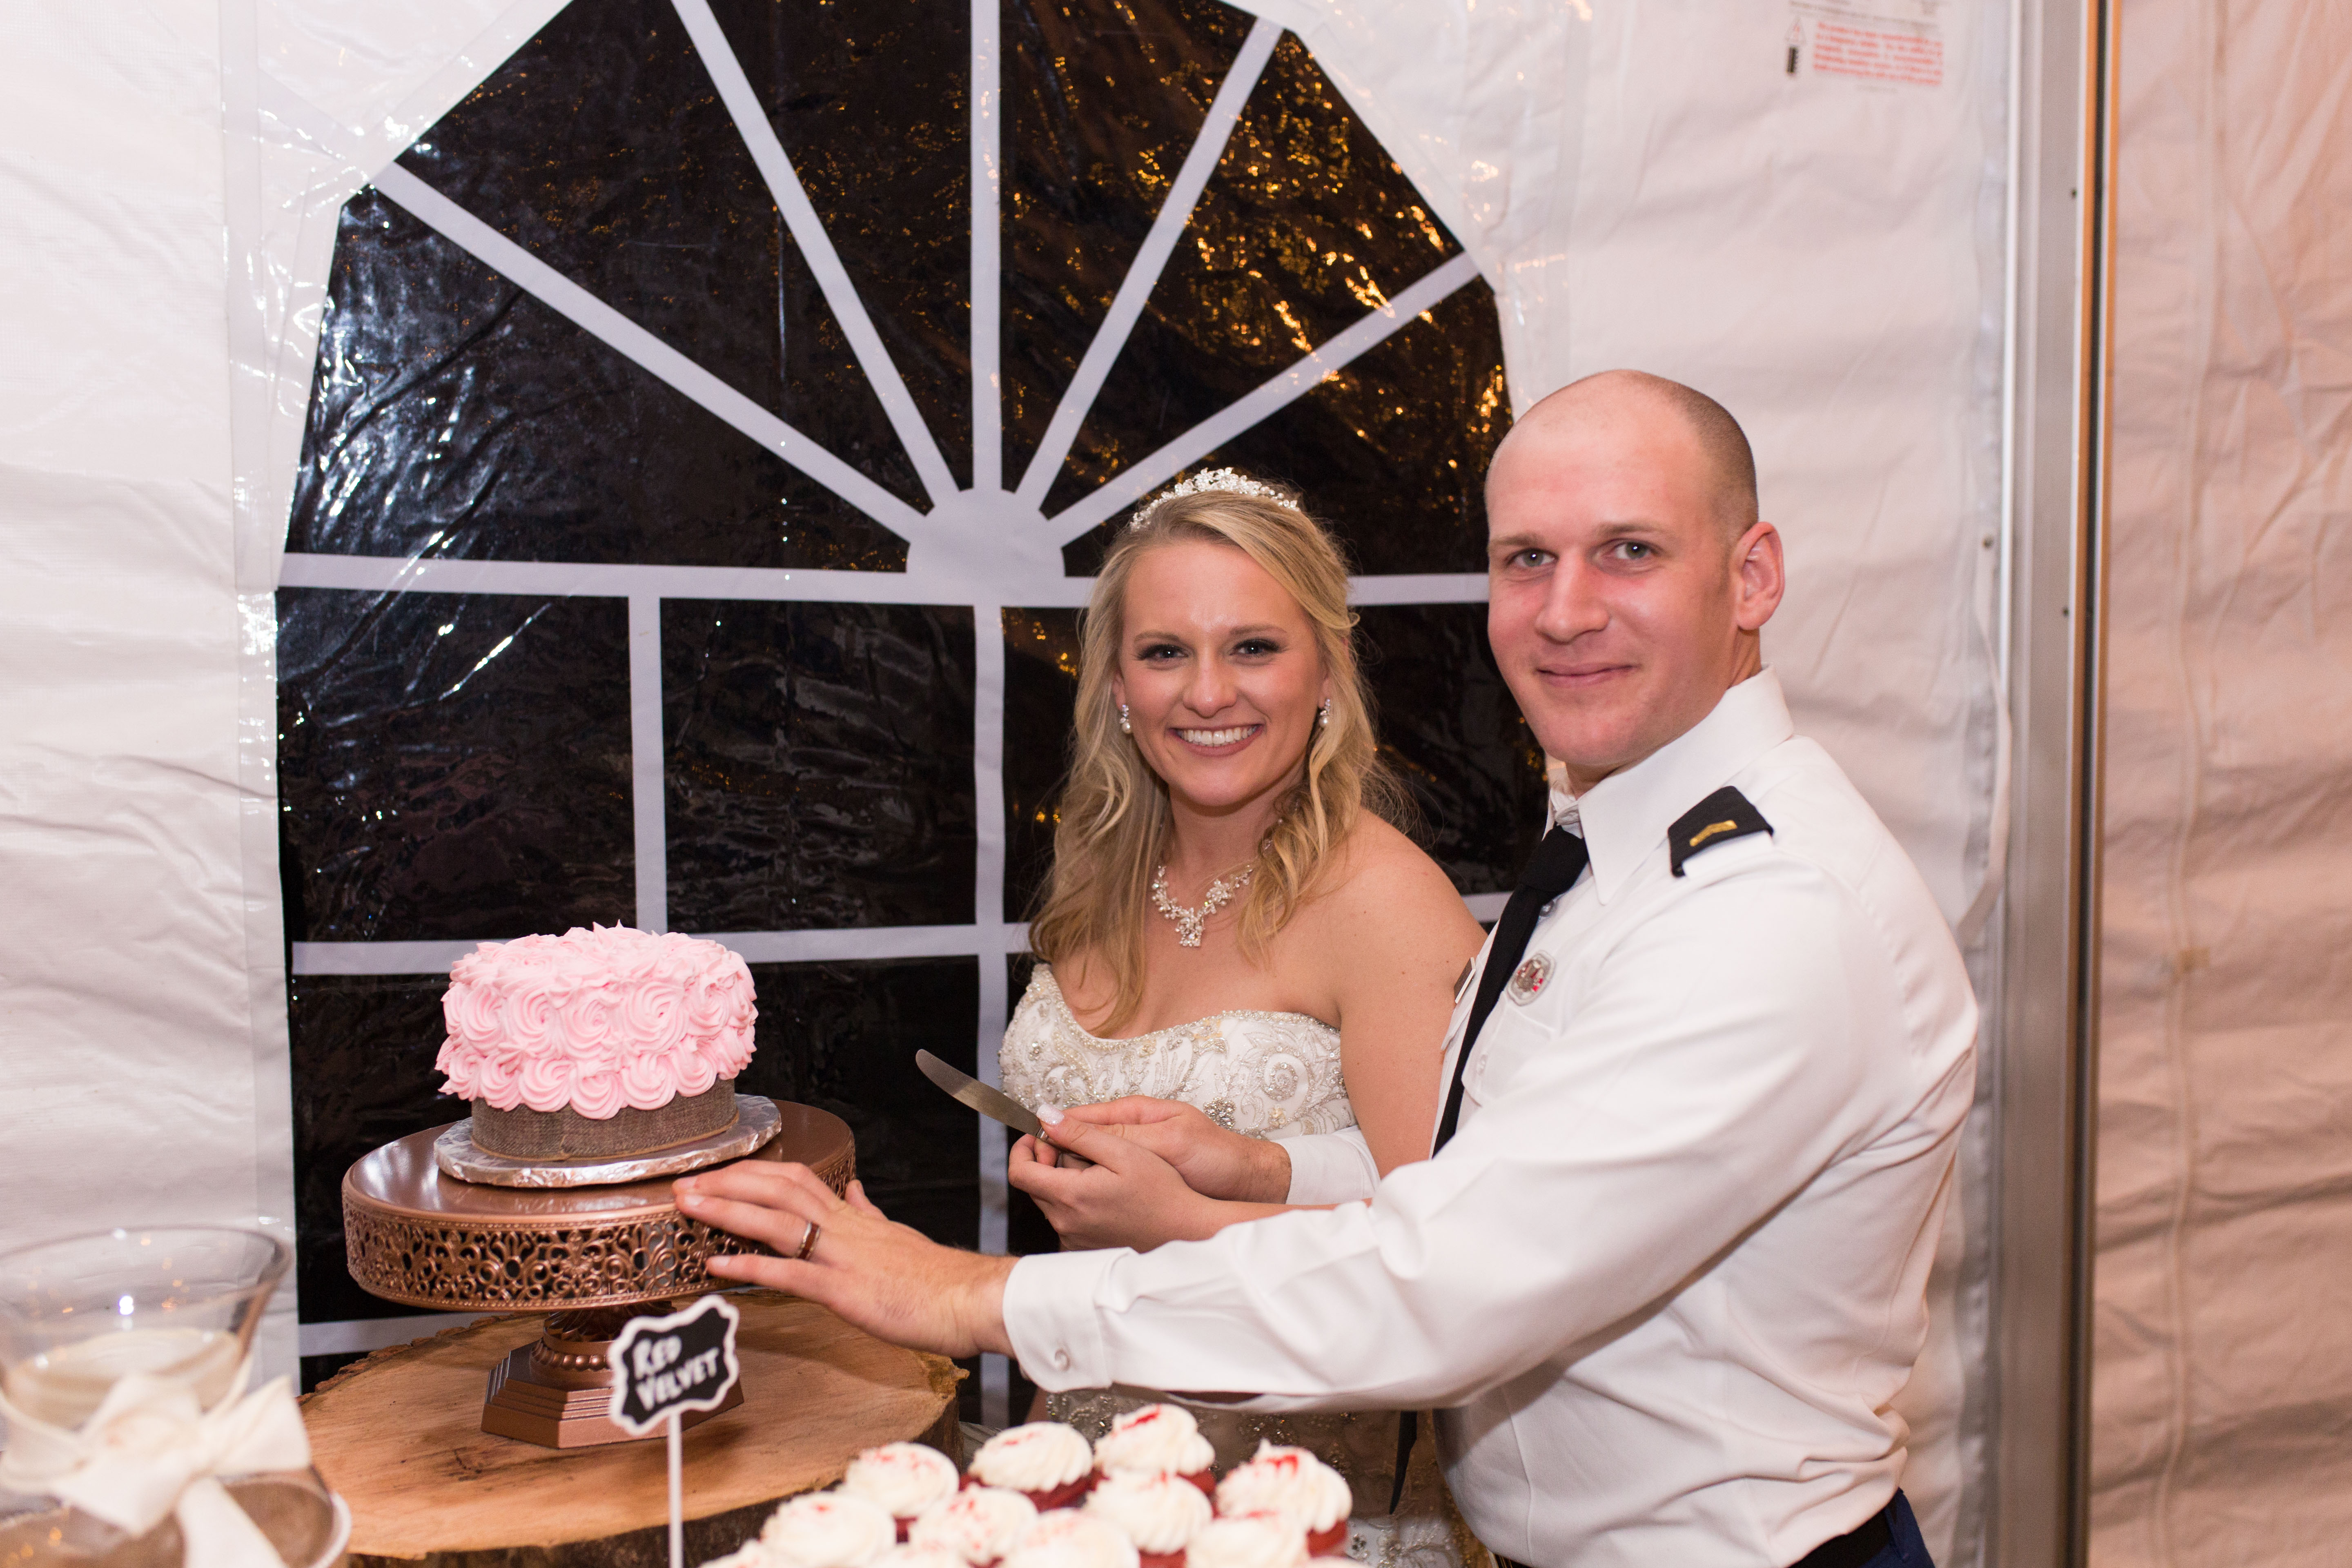 cake cutting at wedding